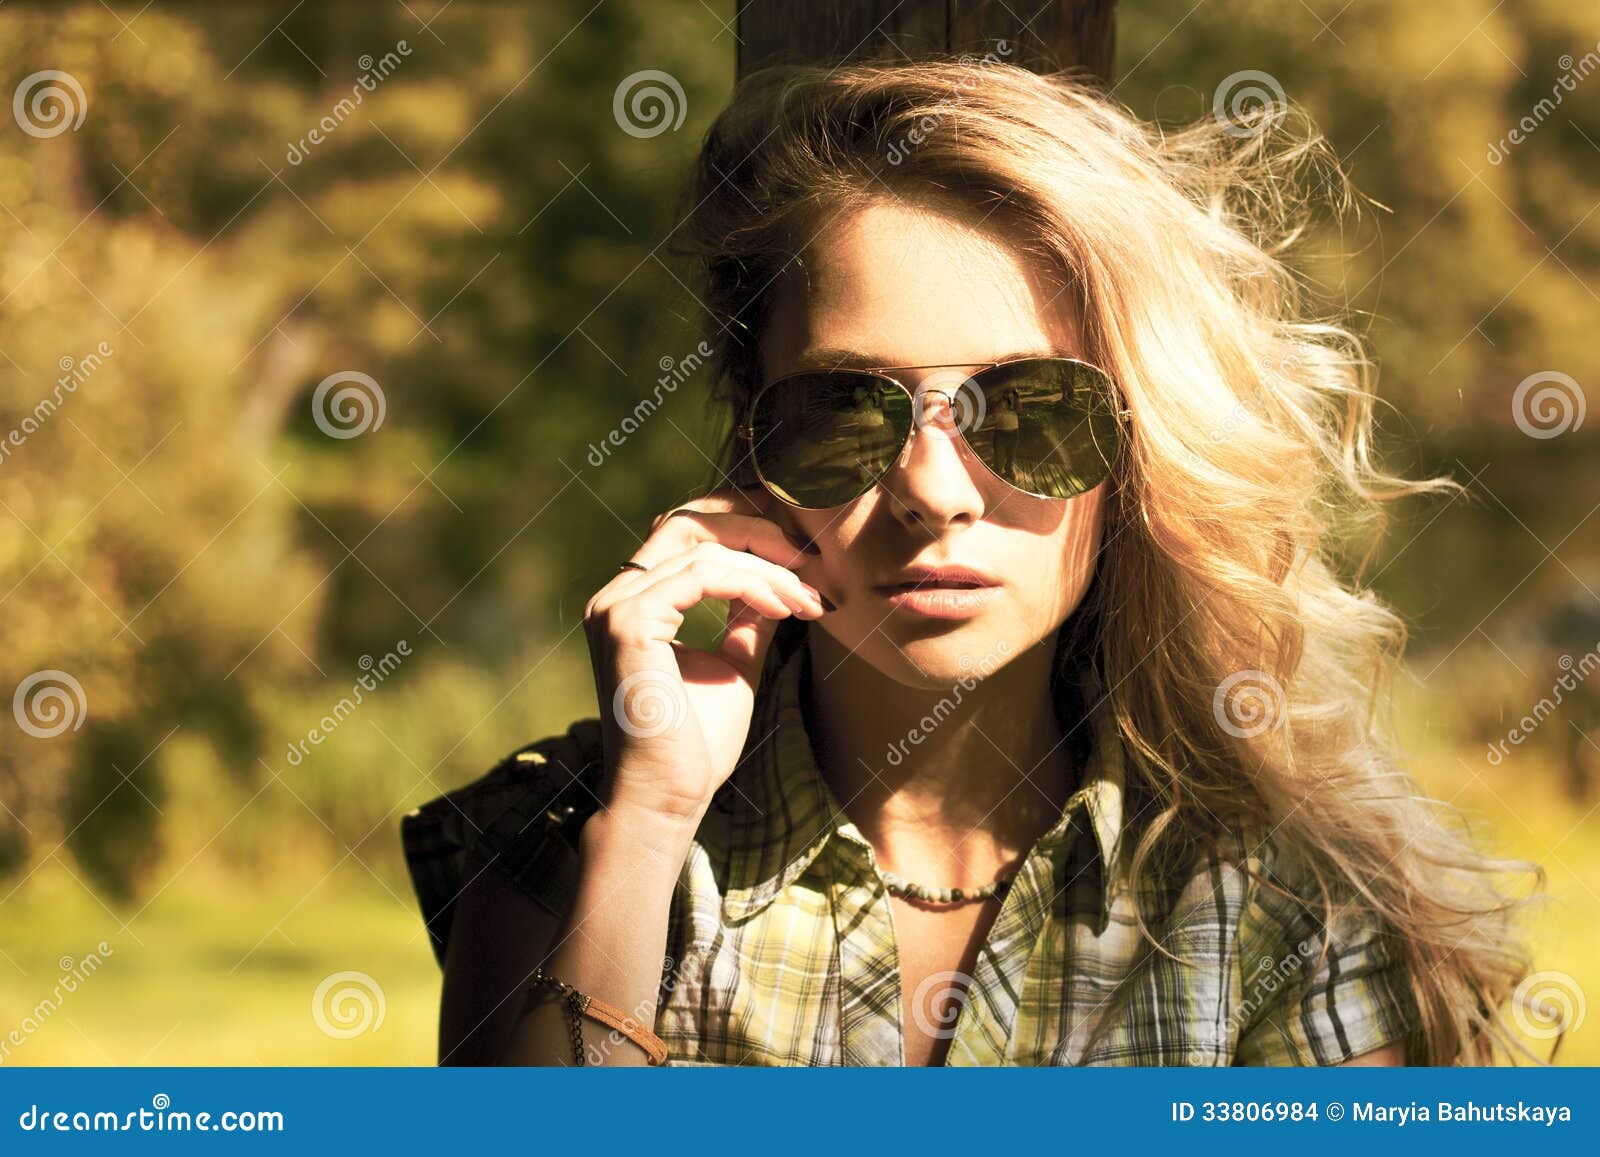 portrait de femme blonde avec des lunettes de soleil 33806984